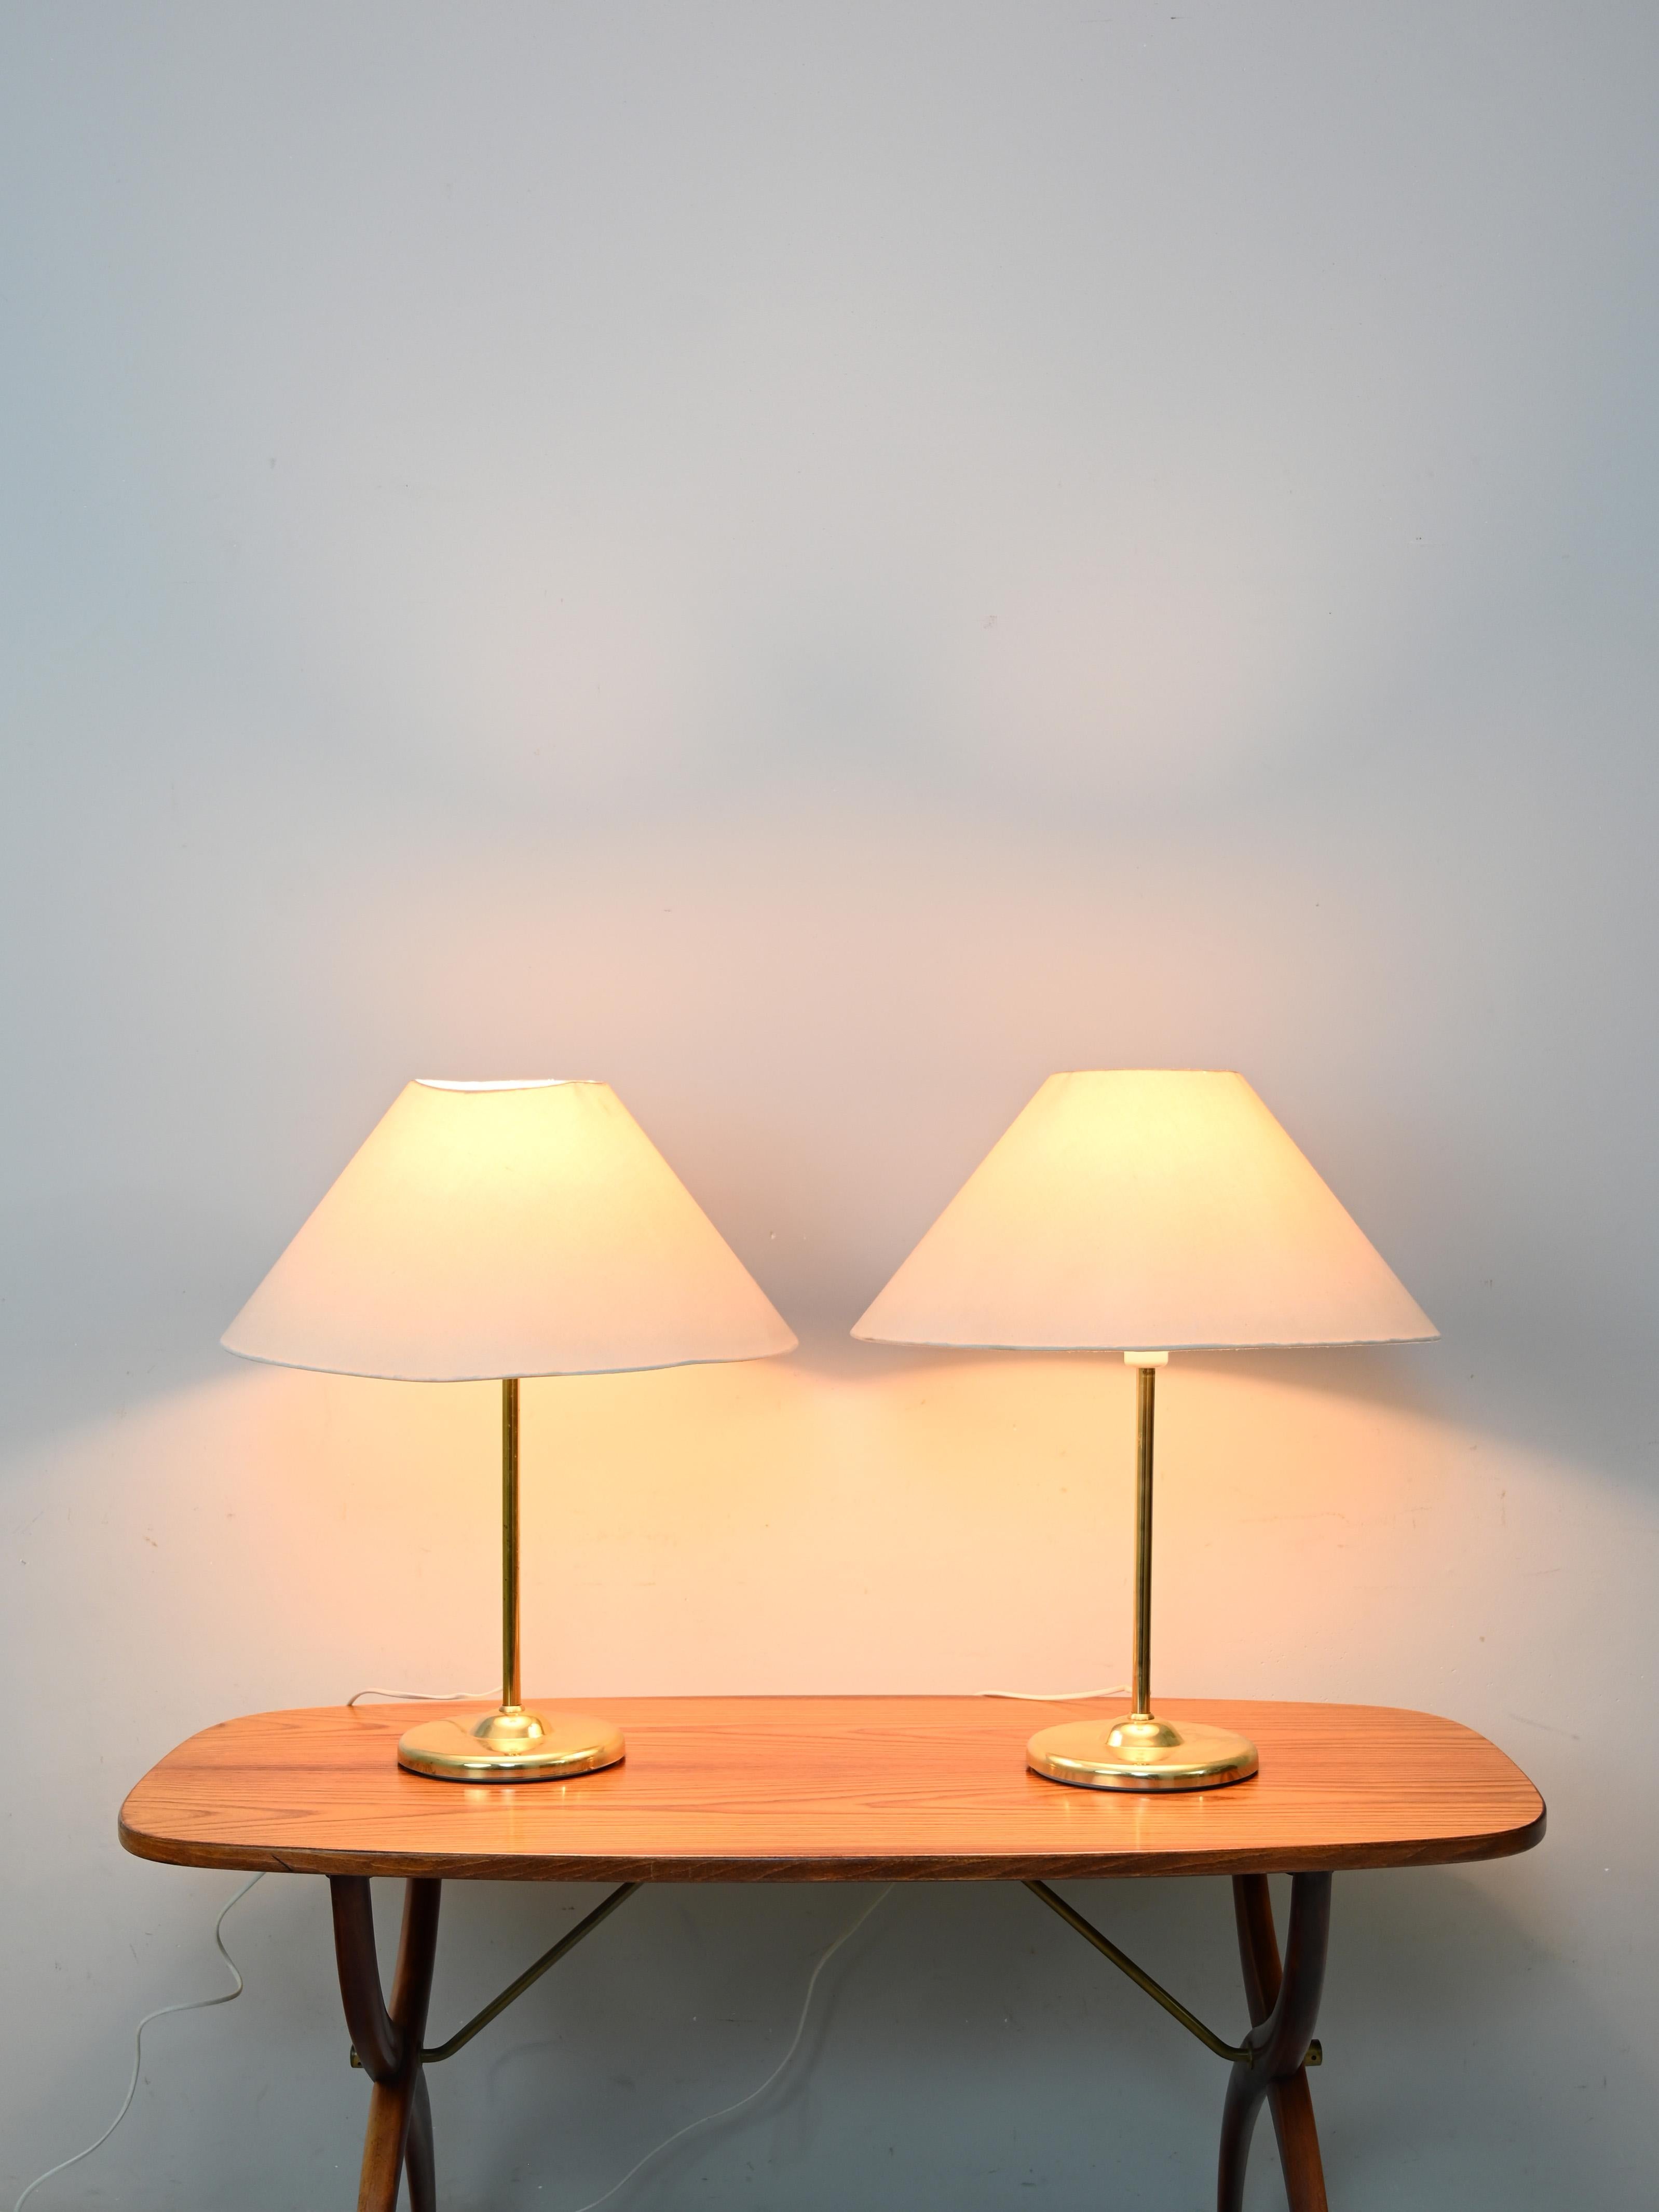 Paire de lampes suédoises des années 1960.

Composé d'une base en métal doré et d'un abat-jour conique en tissu.
Idéales comme lampes de hall ou d'entrée et comme lampes d'abat jour.

Bon état. Peut présenter des signes du temps. Veuillez prêter